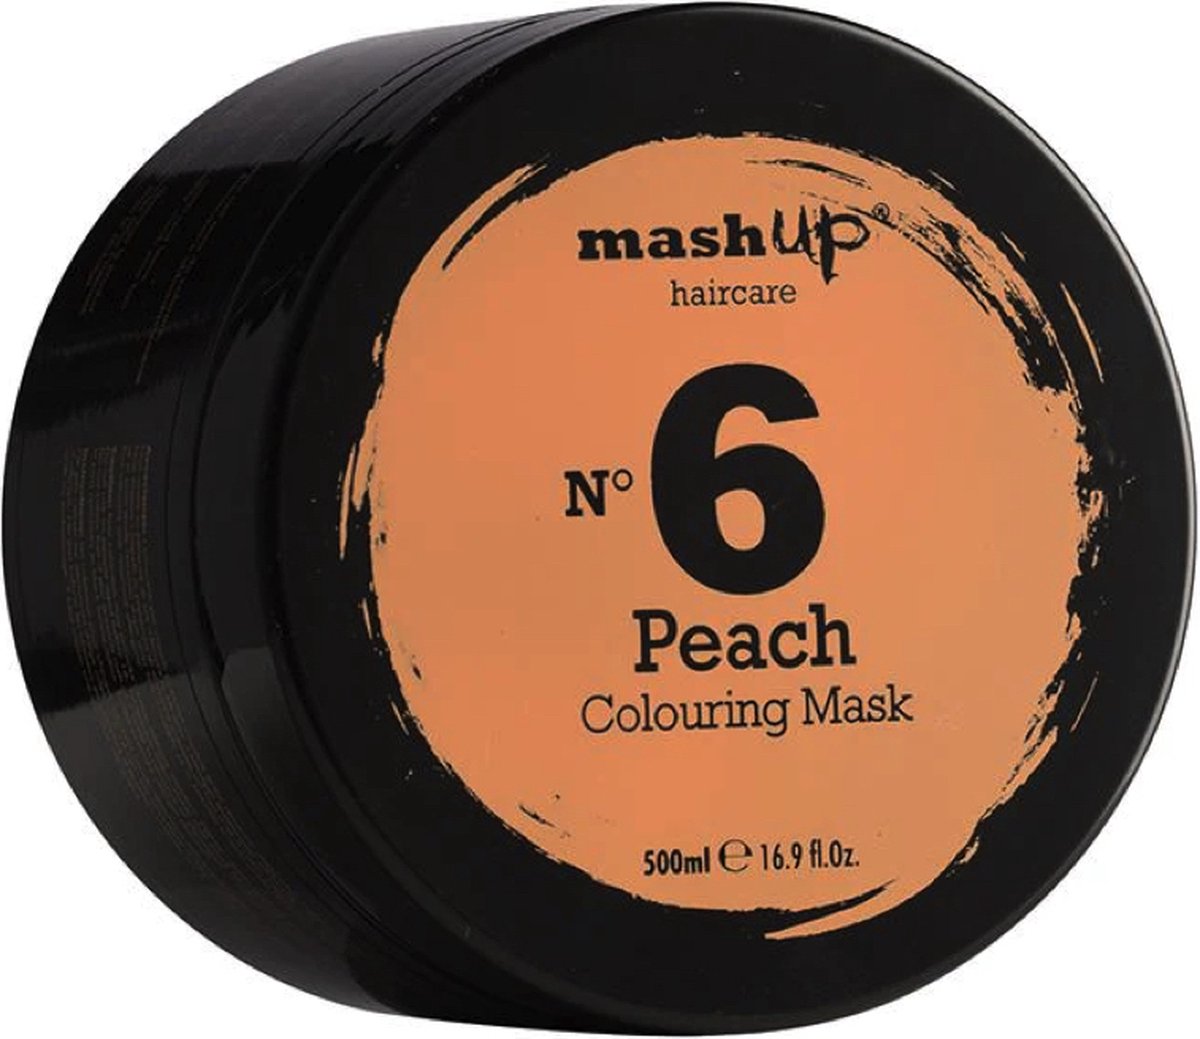 mashUp haircare N° 6 Peach Colouring Mask 500ml